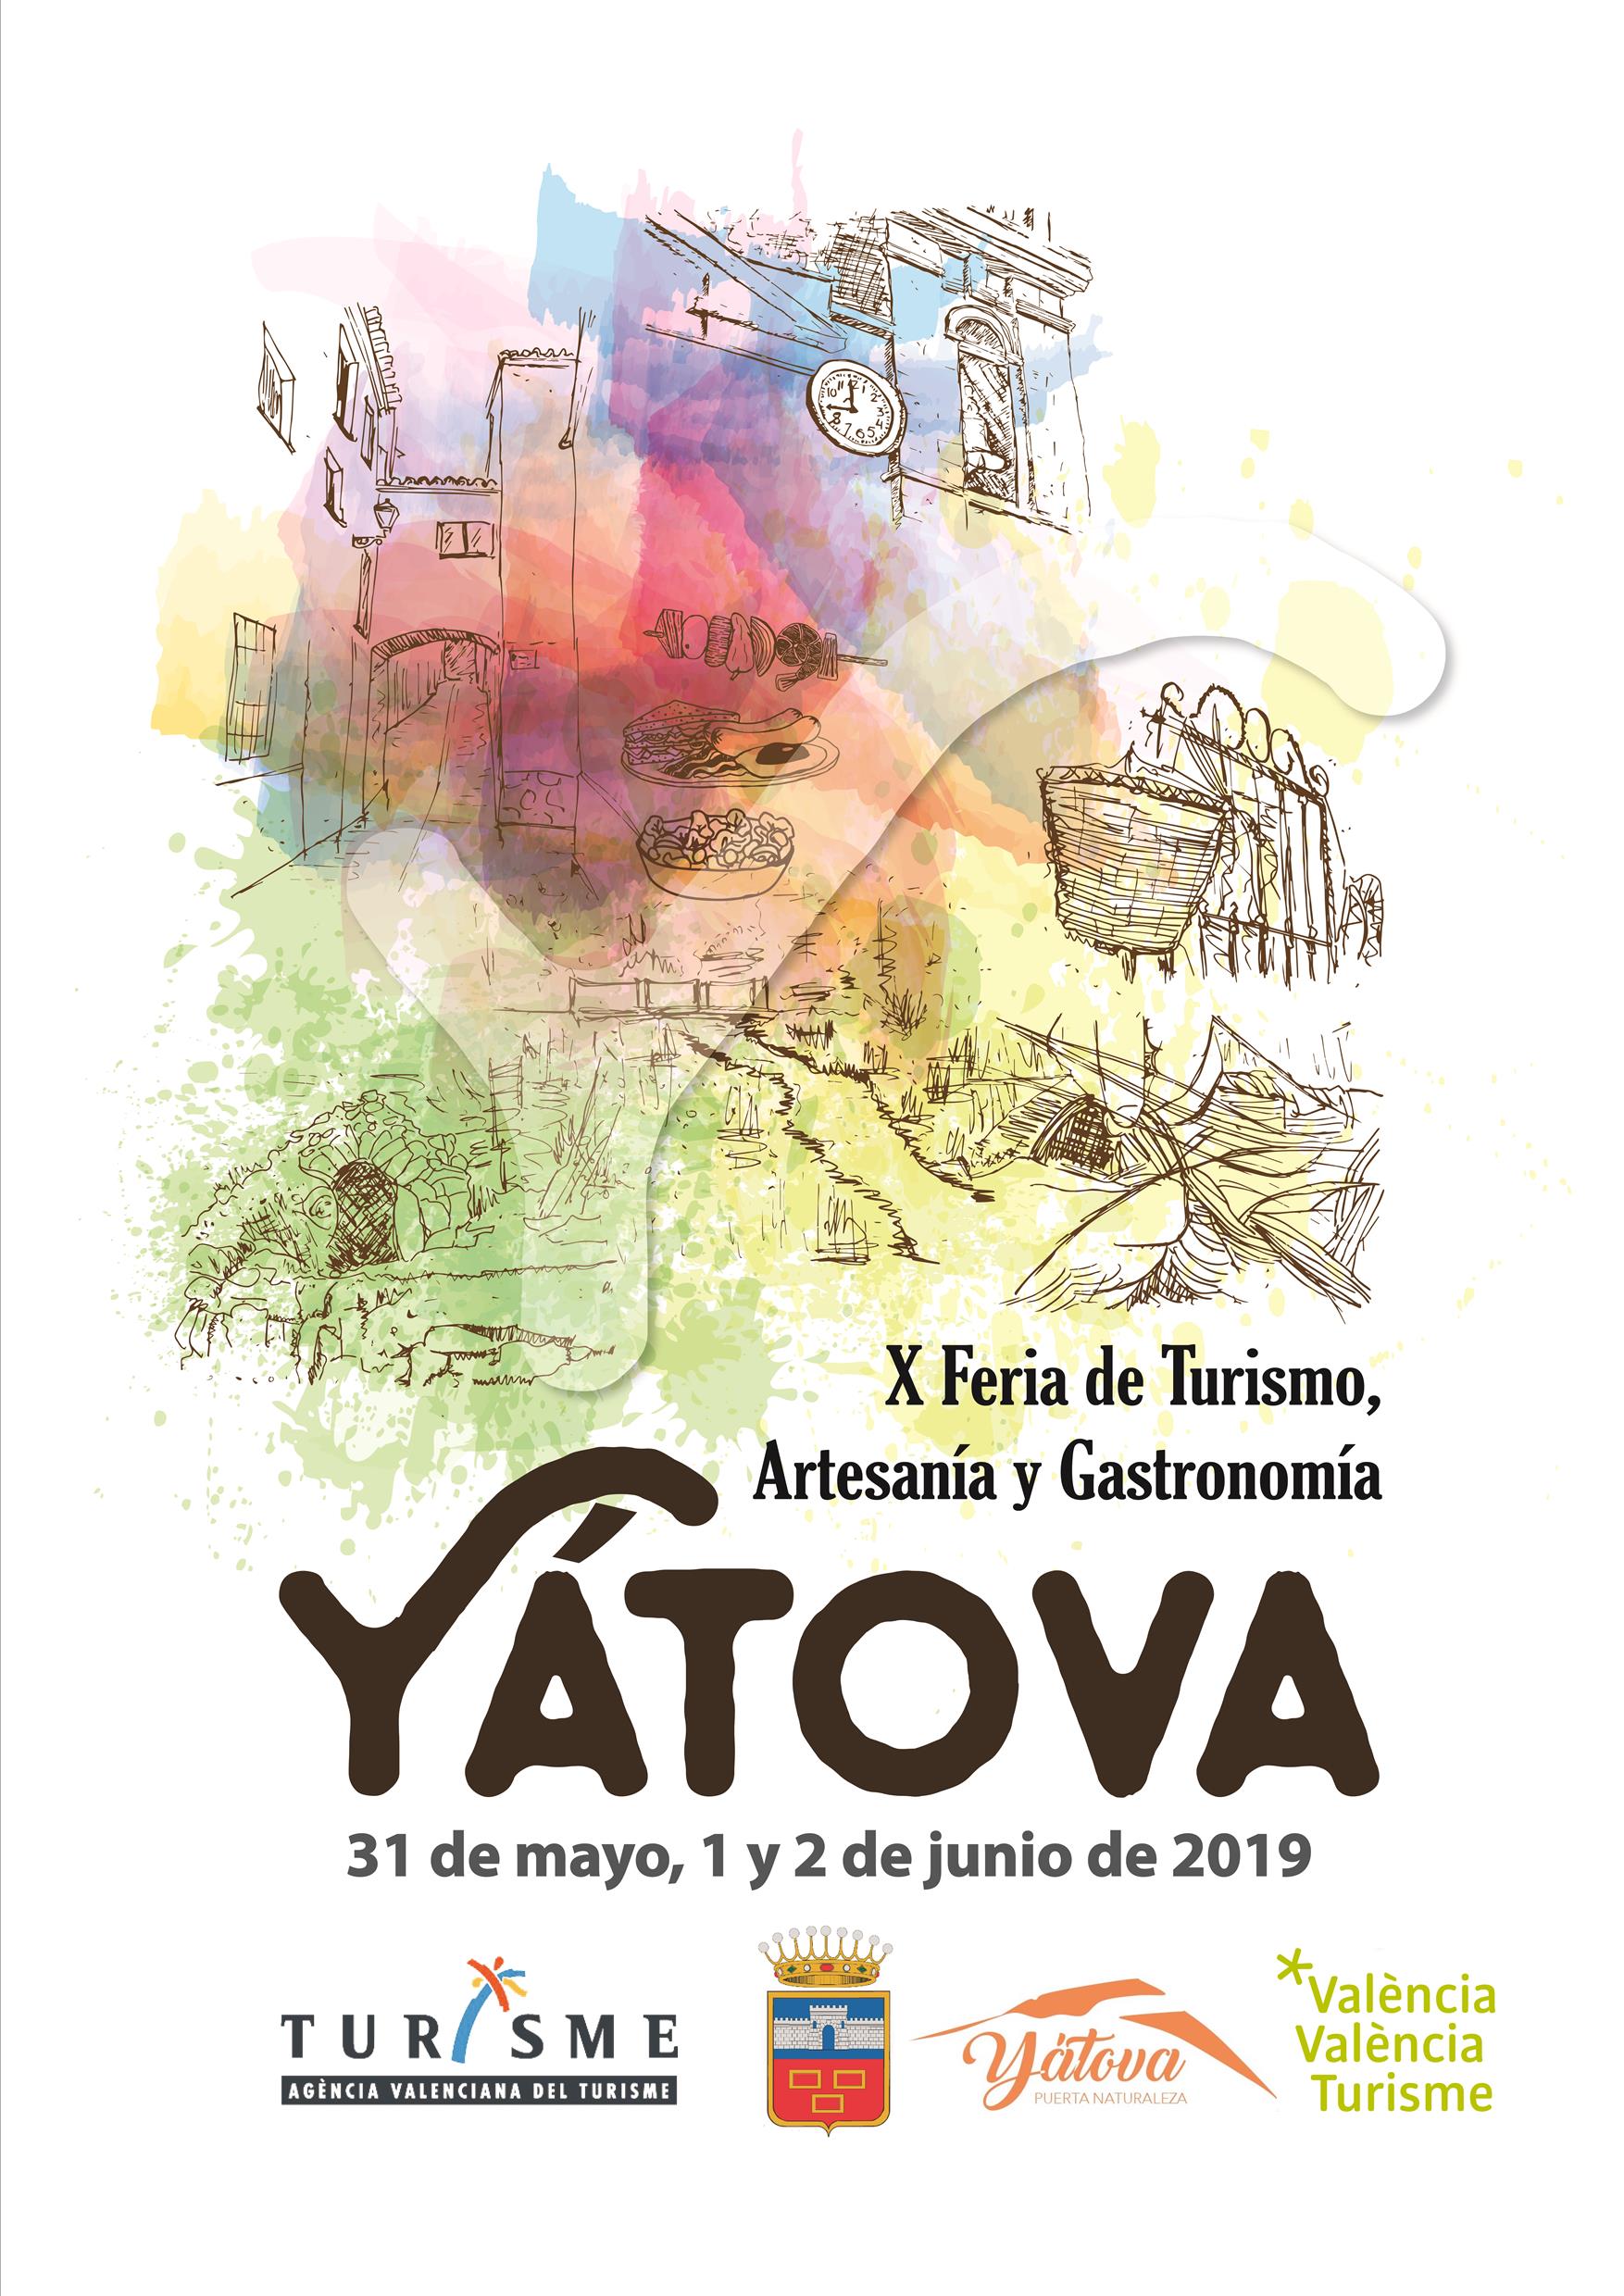 X FERIA de TURISMO, ARTESANÍA y GASTRONOMÍA YÁTOVA 2019 – Turismo Yátova